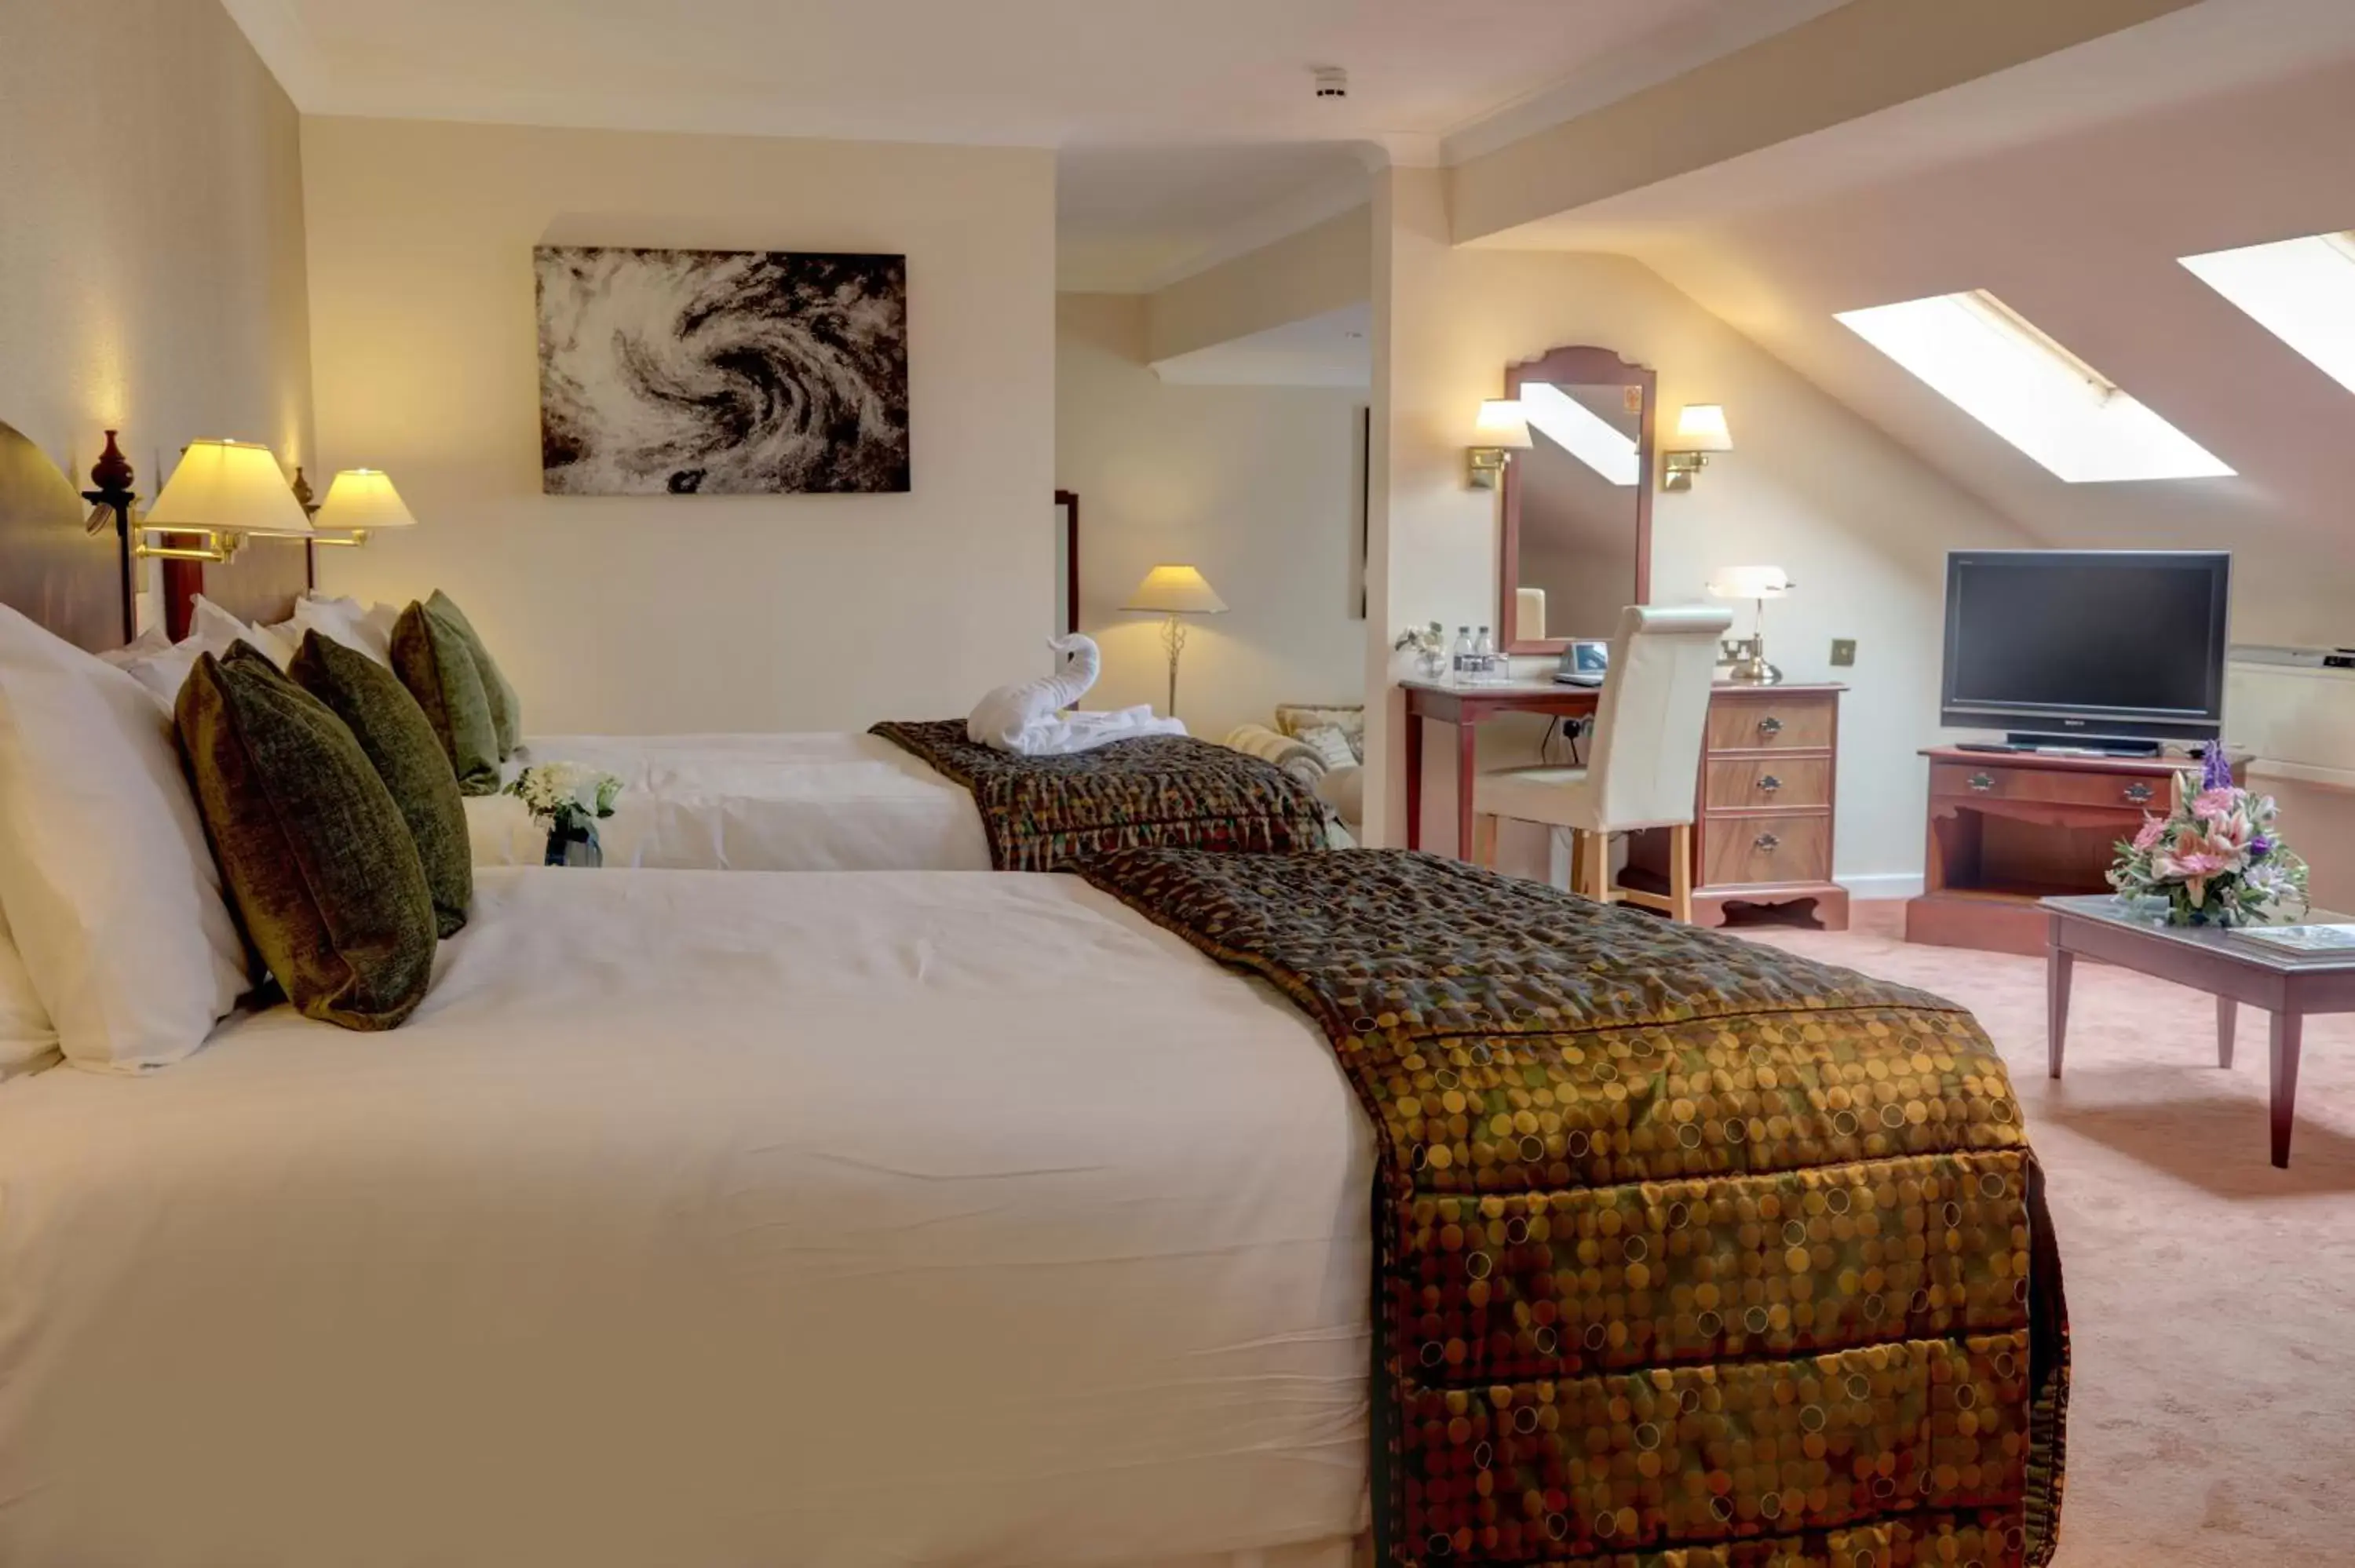 Bed in Best Western Plus Bentley Hotel, Leisure Club & Spa